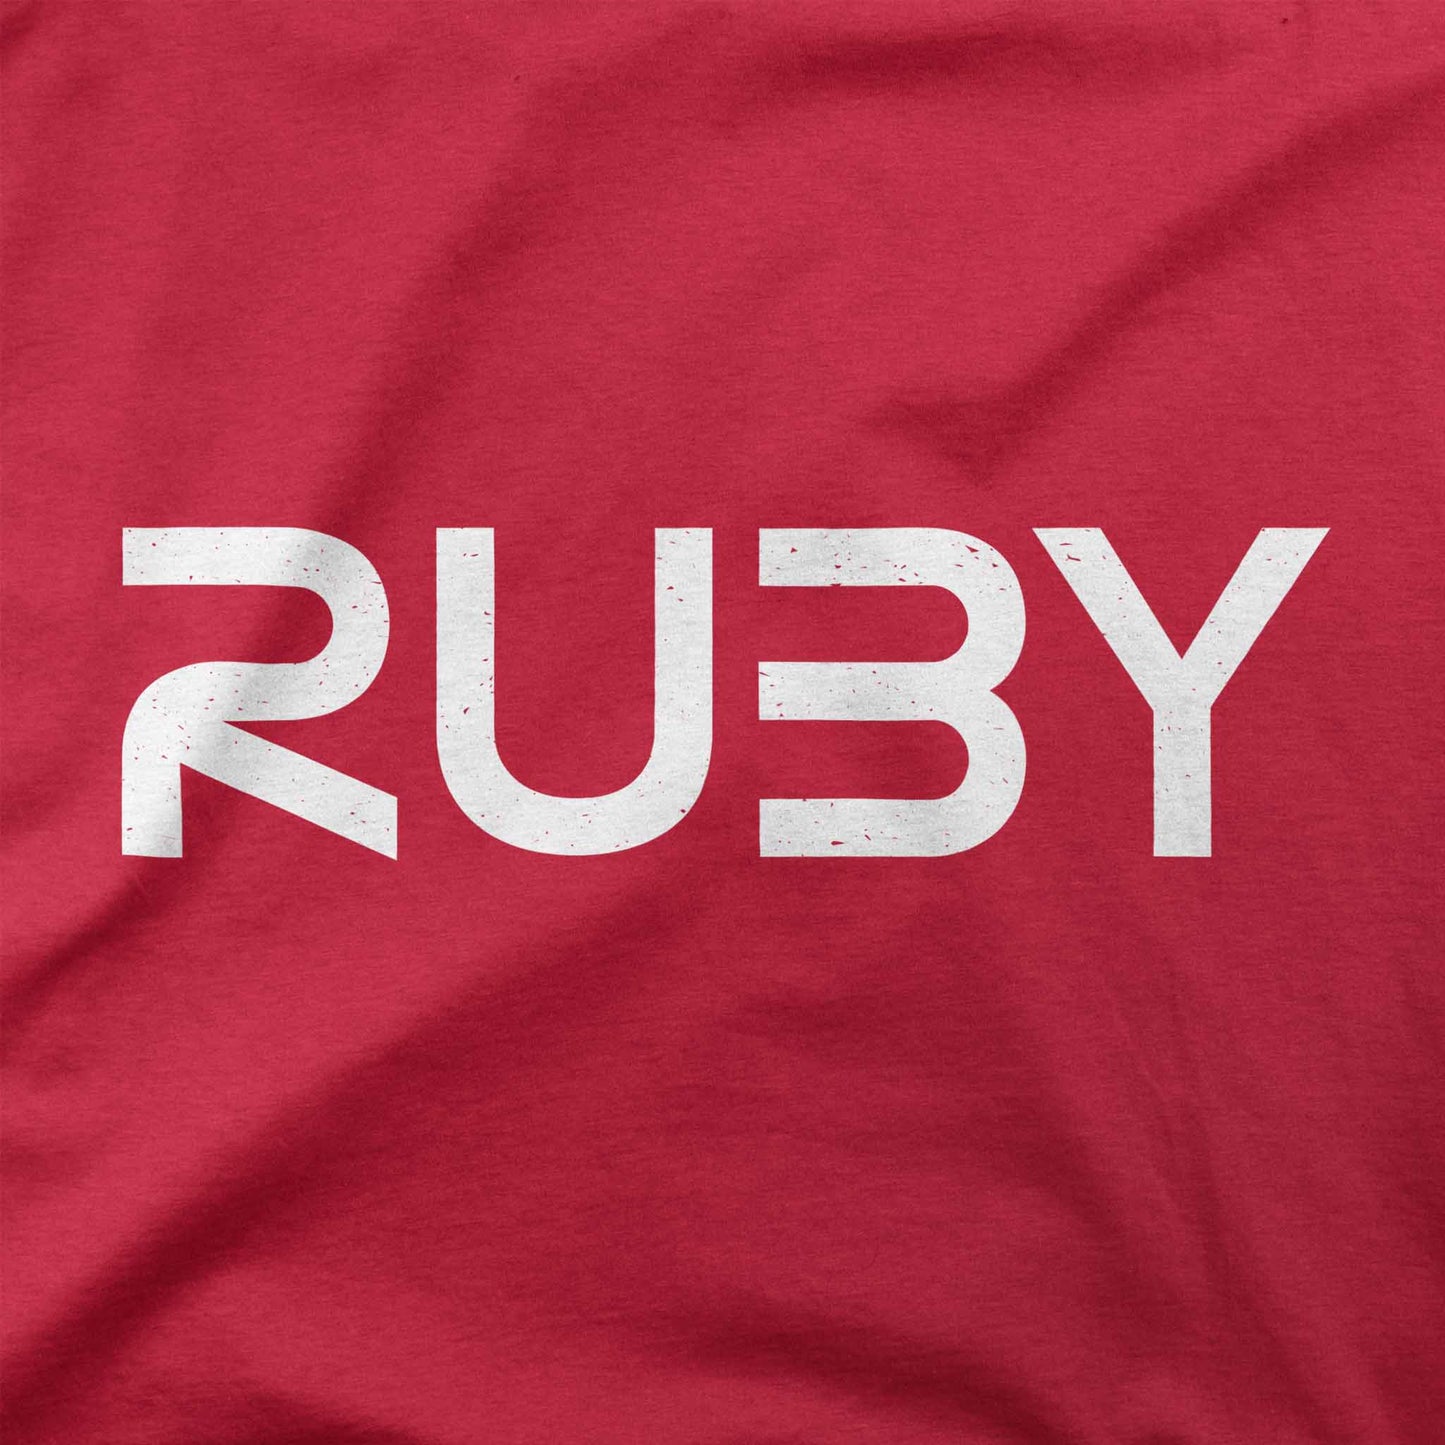 Ruby Worm